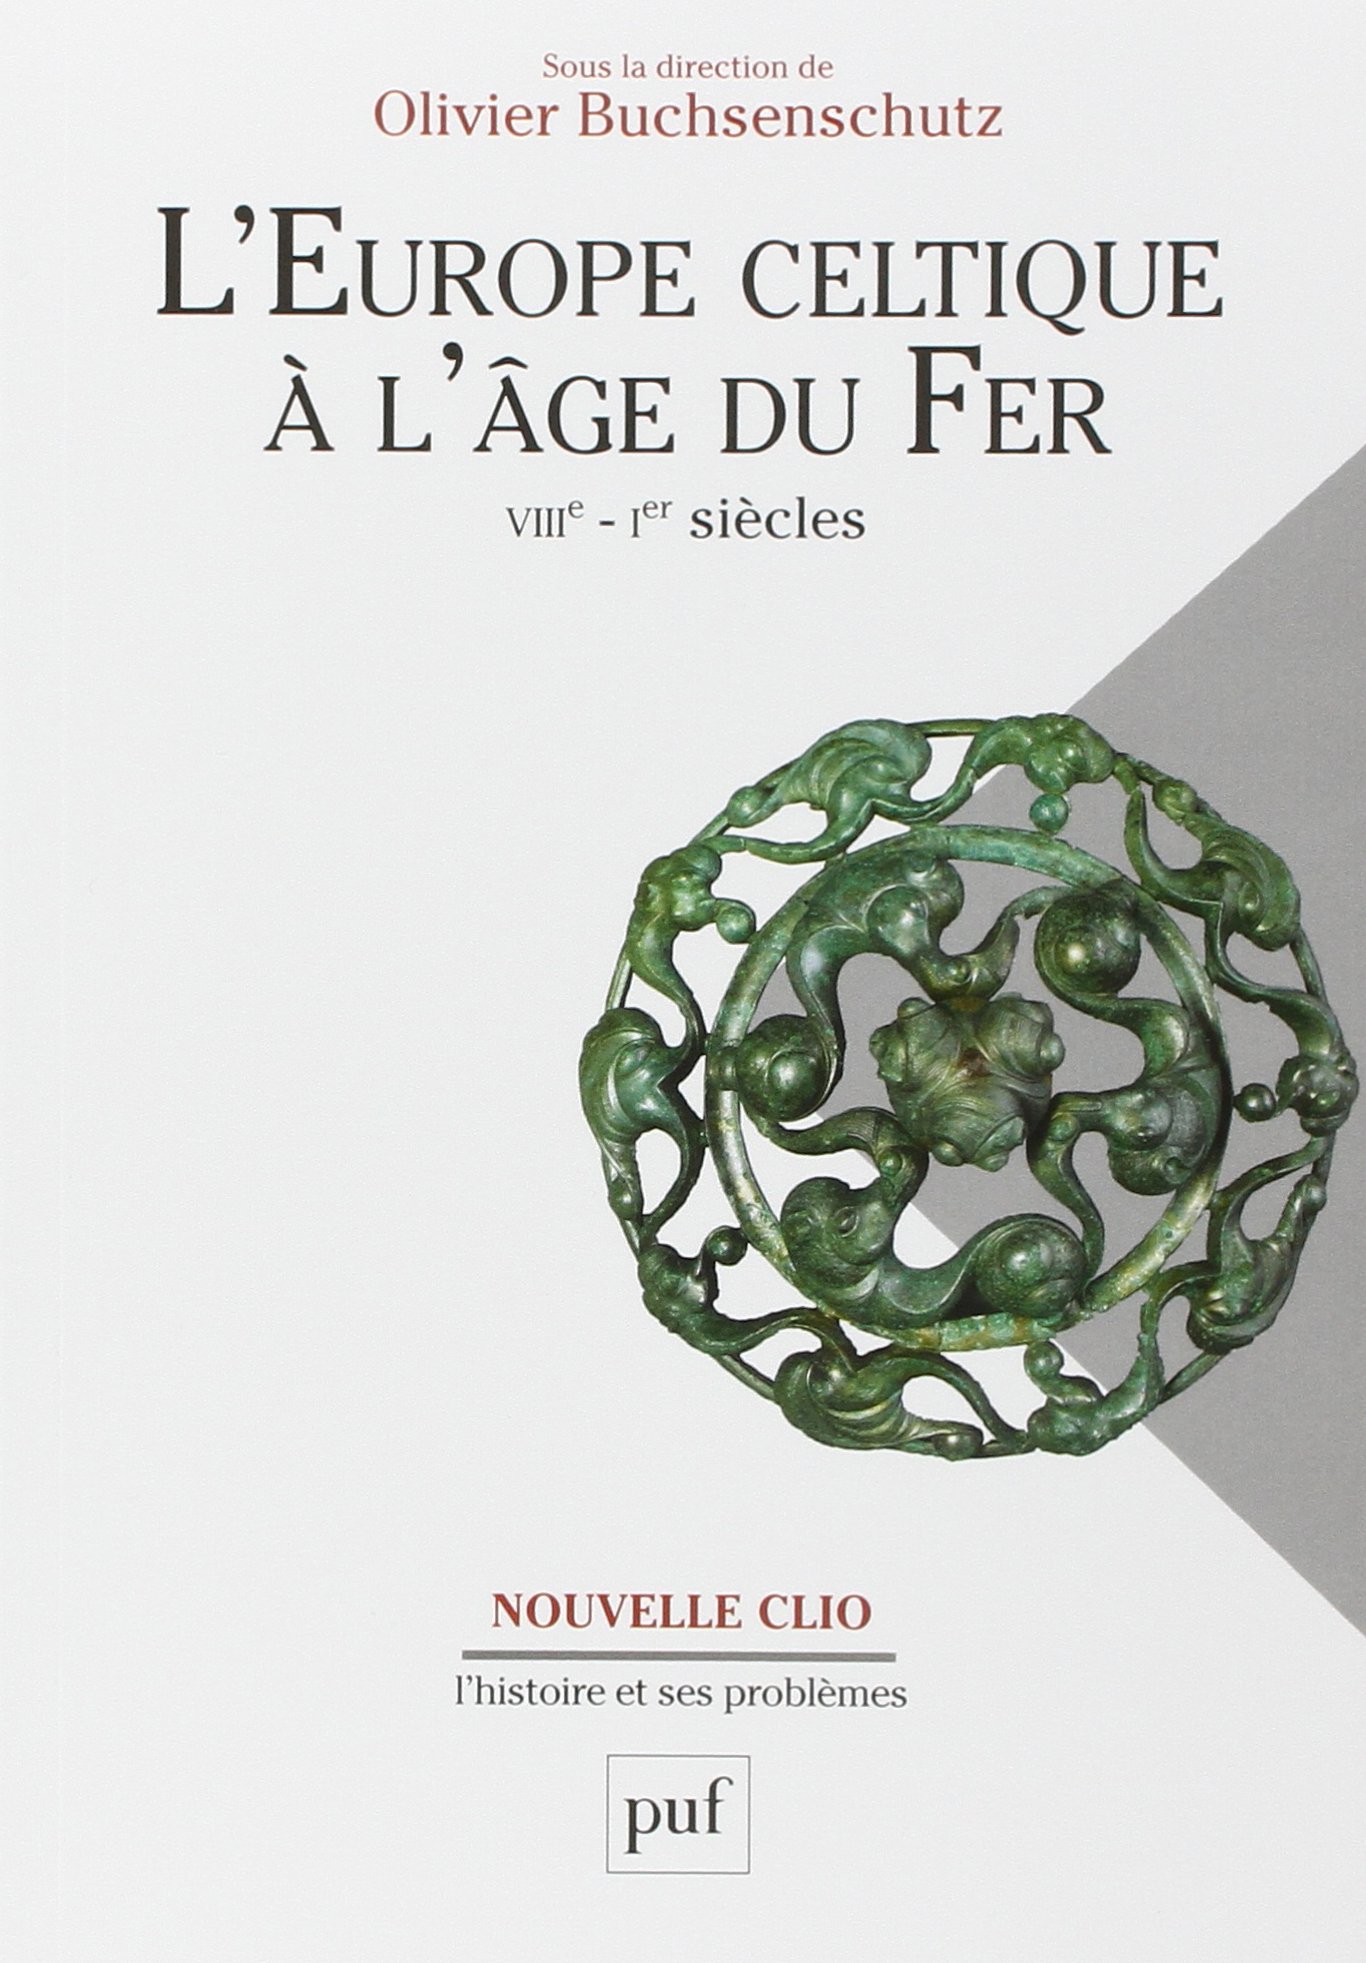 ÉPUISÉ - L'Europe celtique à l'âge du Fer, VIIIe - Ier siècles, 2015, 512 p.